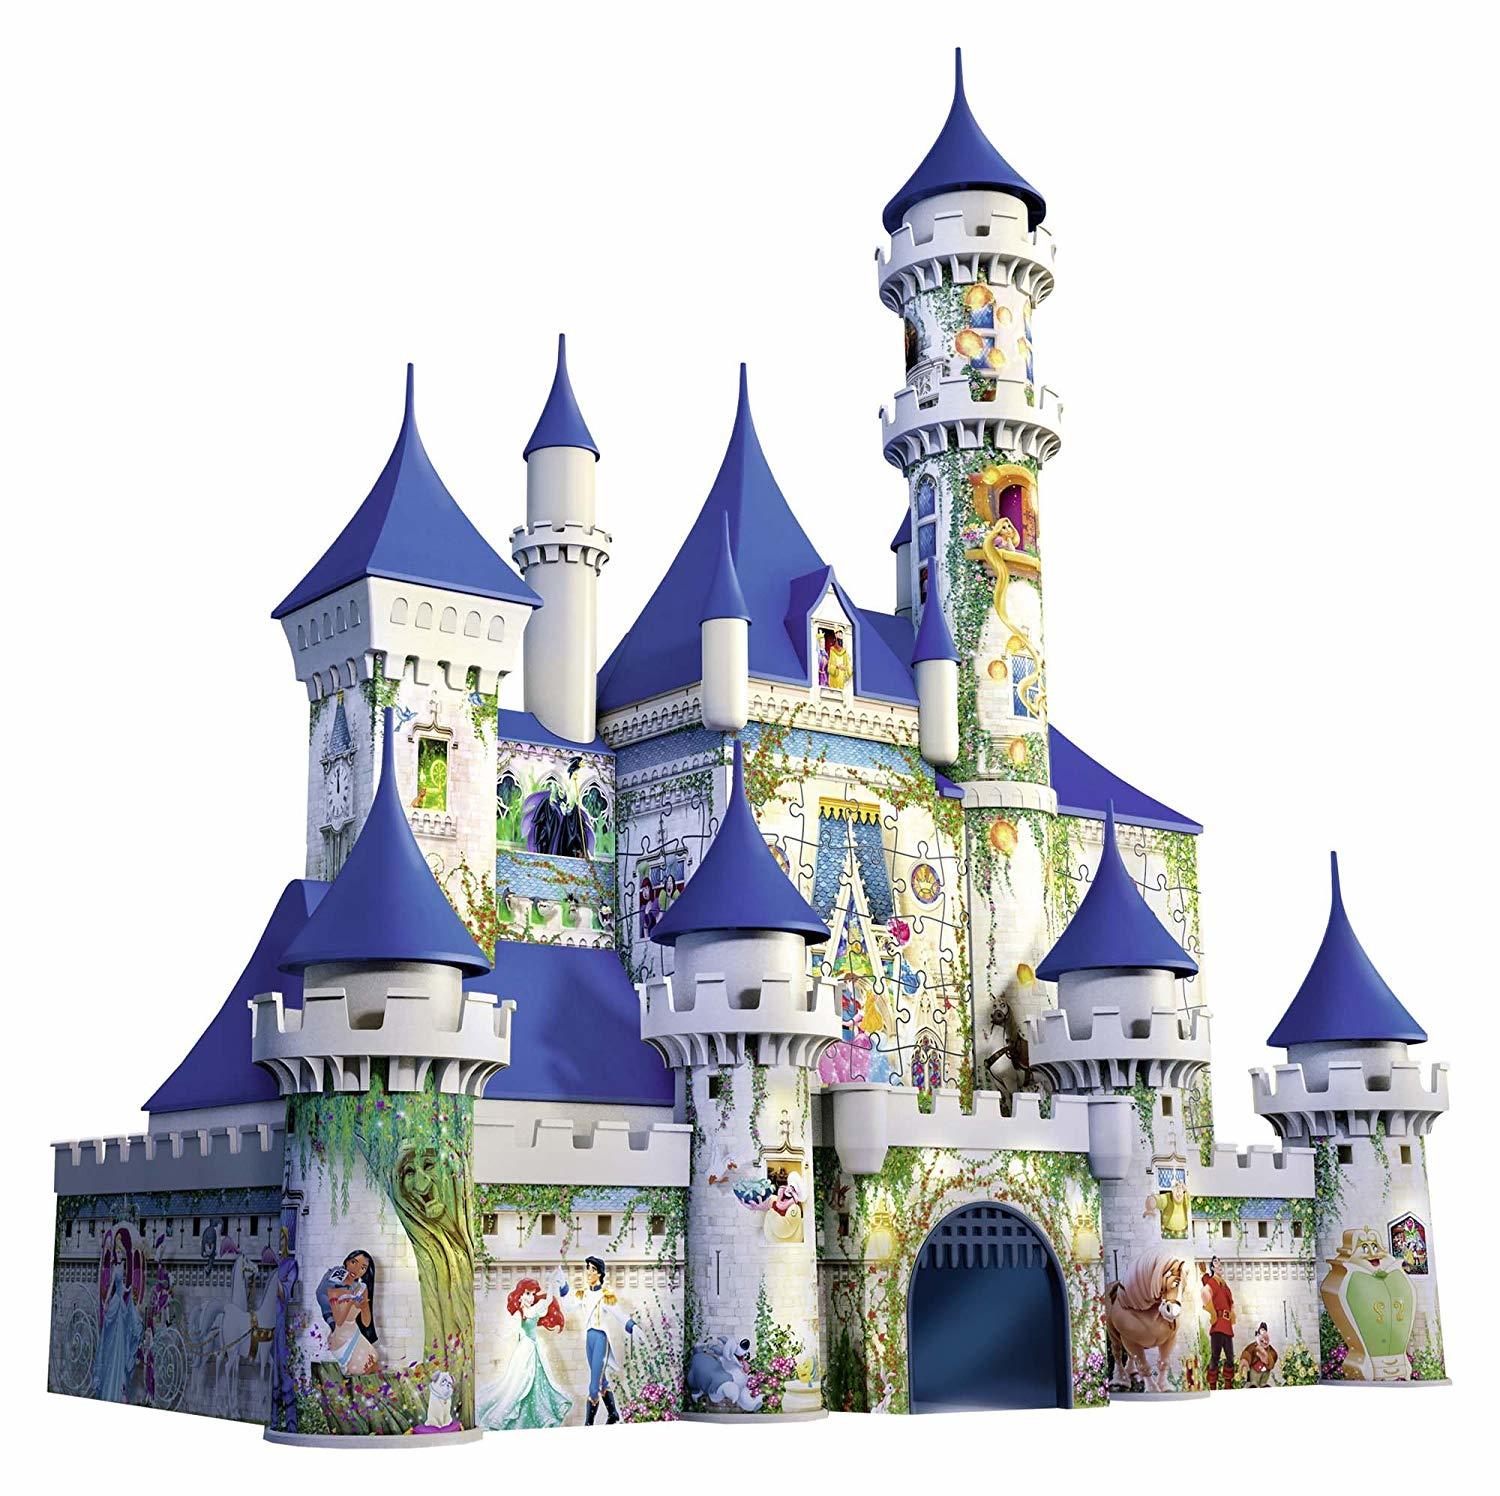 Ravensburger 3D Puzzle 216pc Disney Princesses Castle